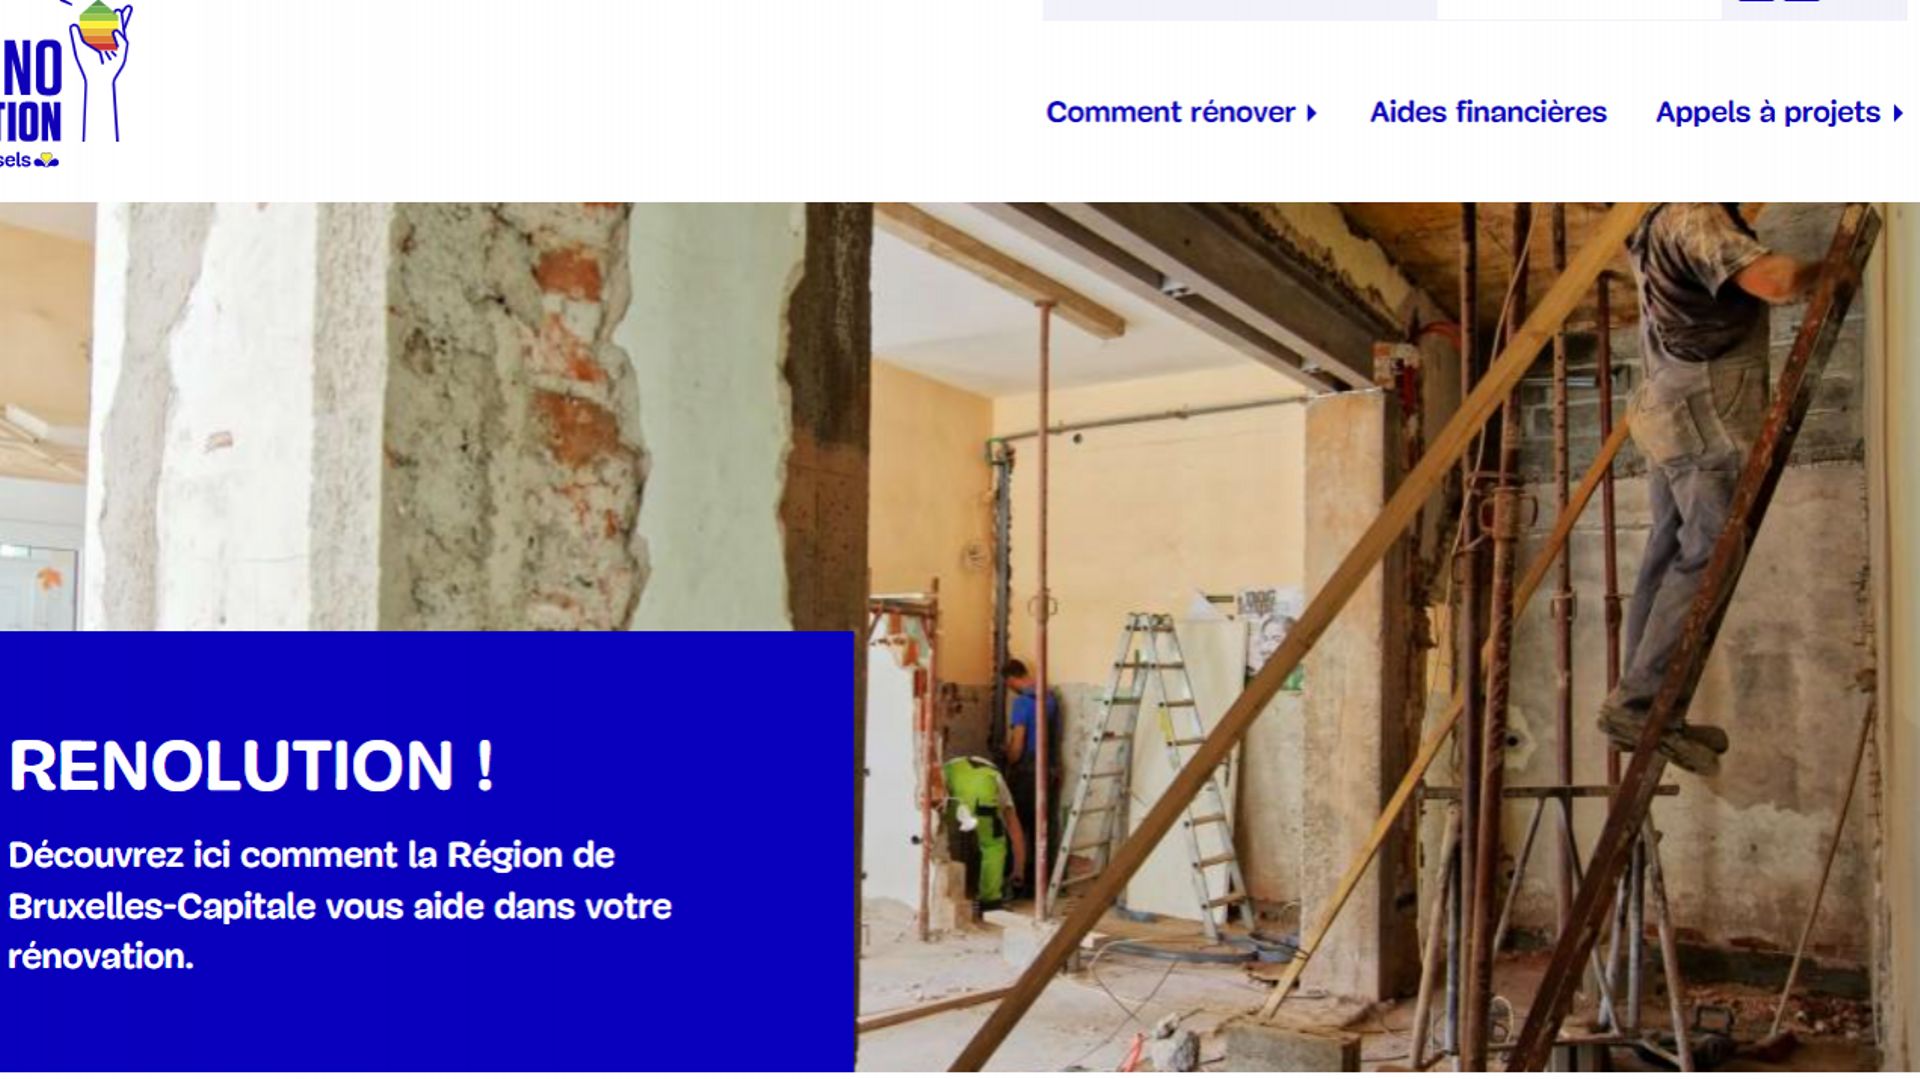 Capture du nouveau site internet Renolution. Brussels où demander les primes à la rénovation